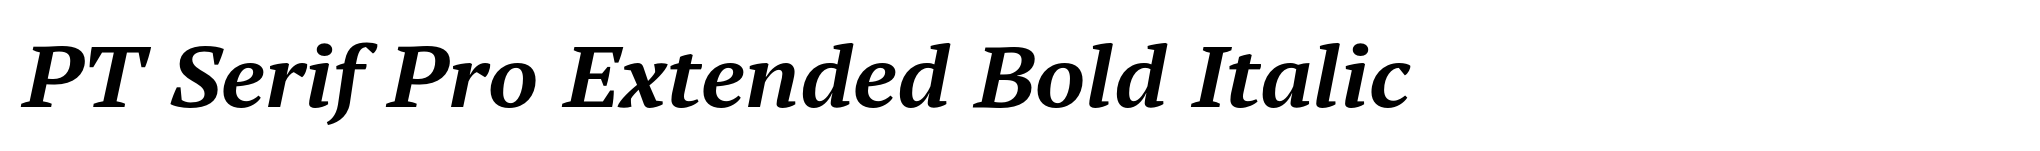 PT Serif Pro Extended Bold Italic image